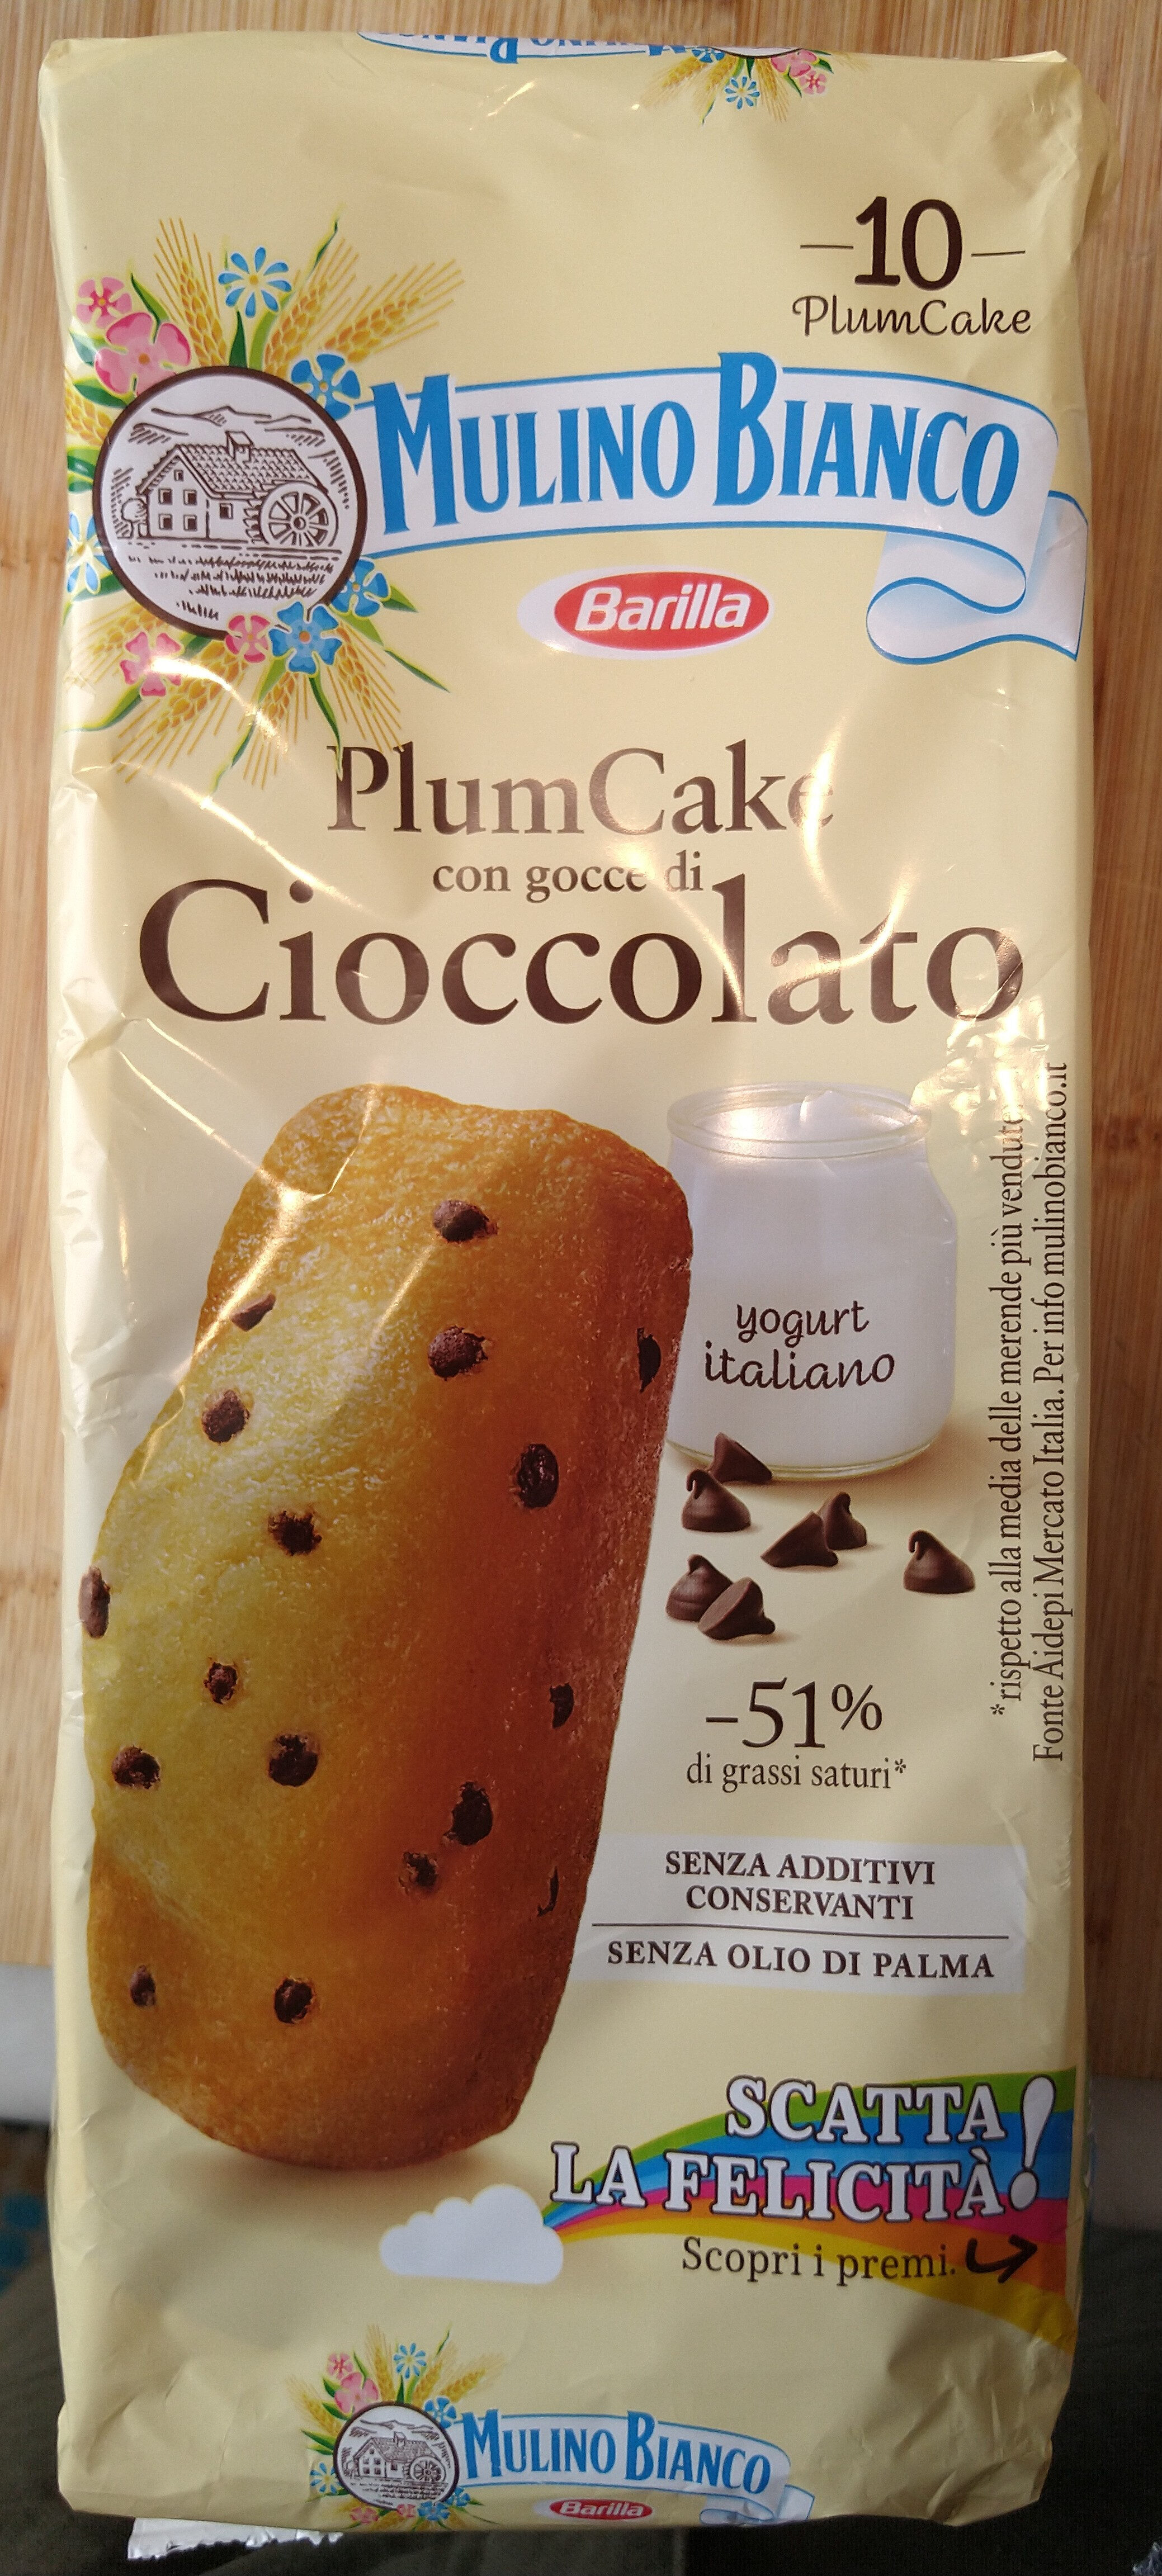 Plumcake con gocce di cioccolato - Product - it